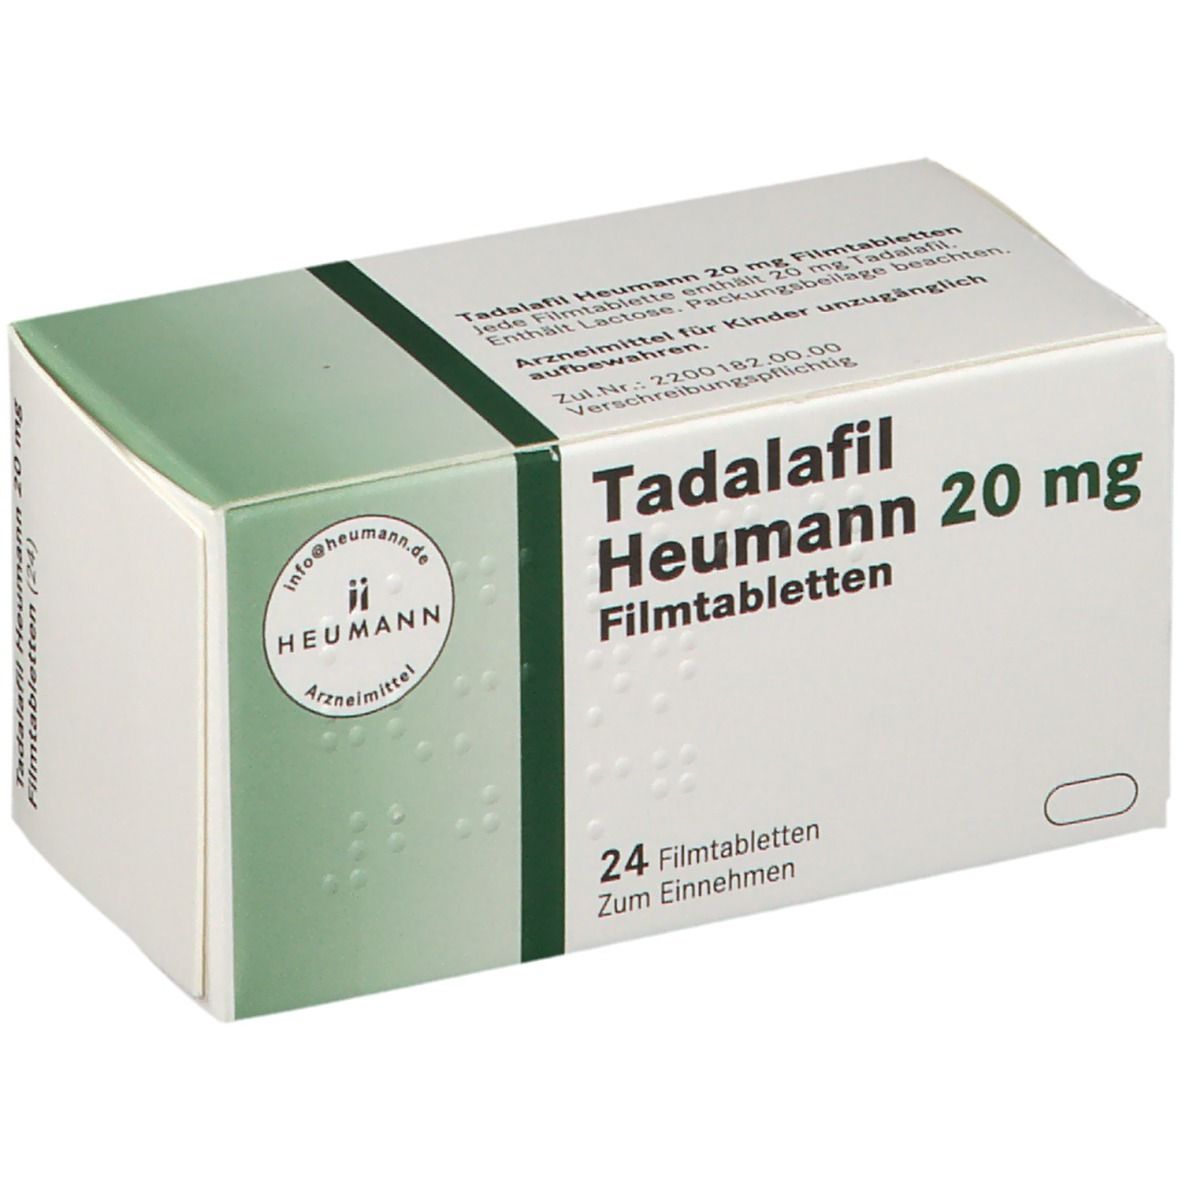 Tadalafil Heumann 20 mg